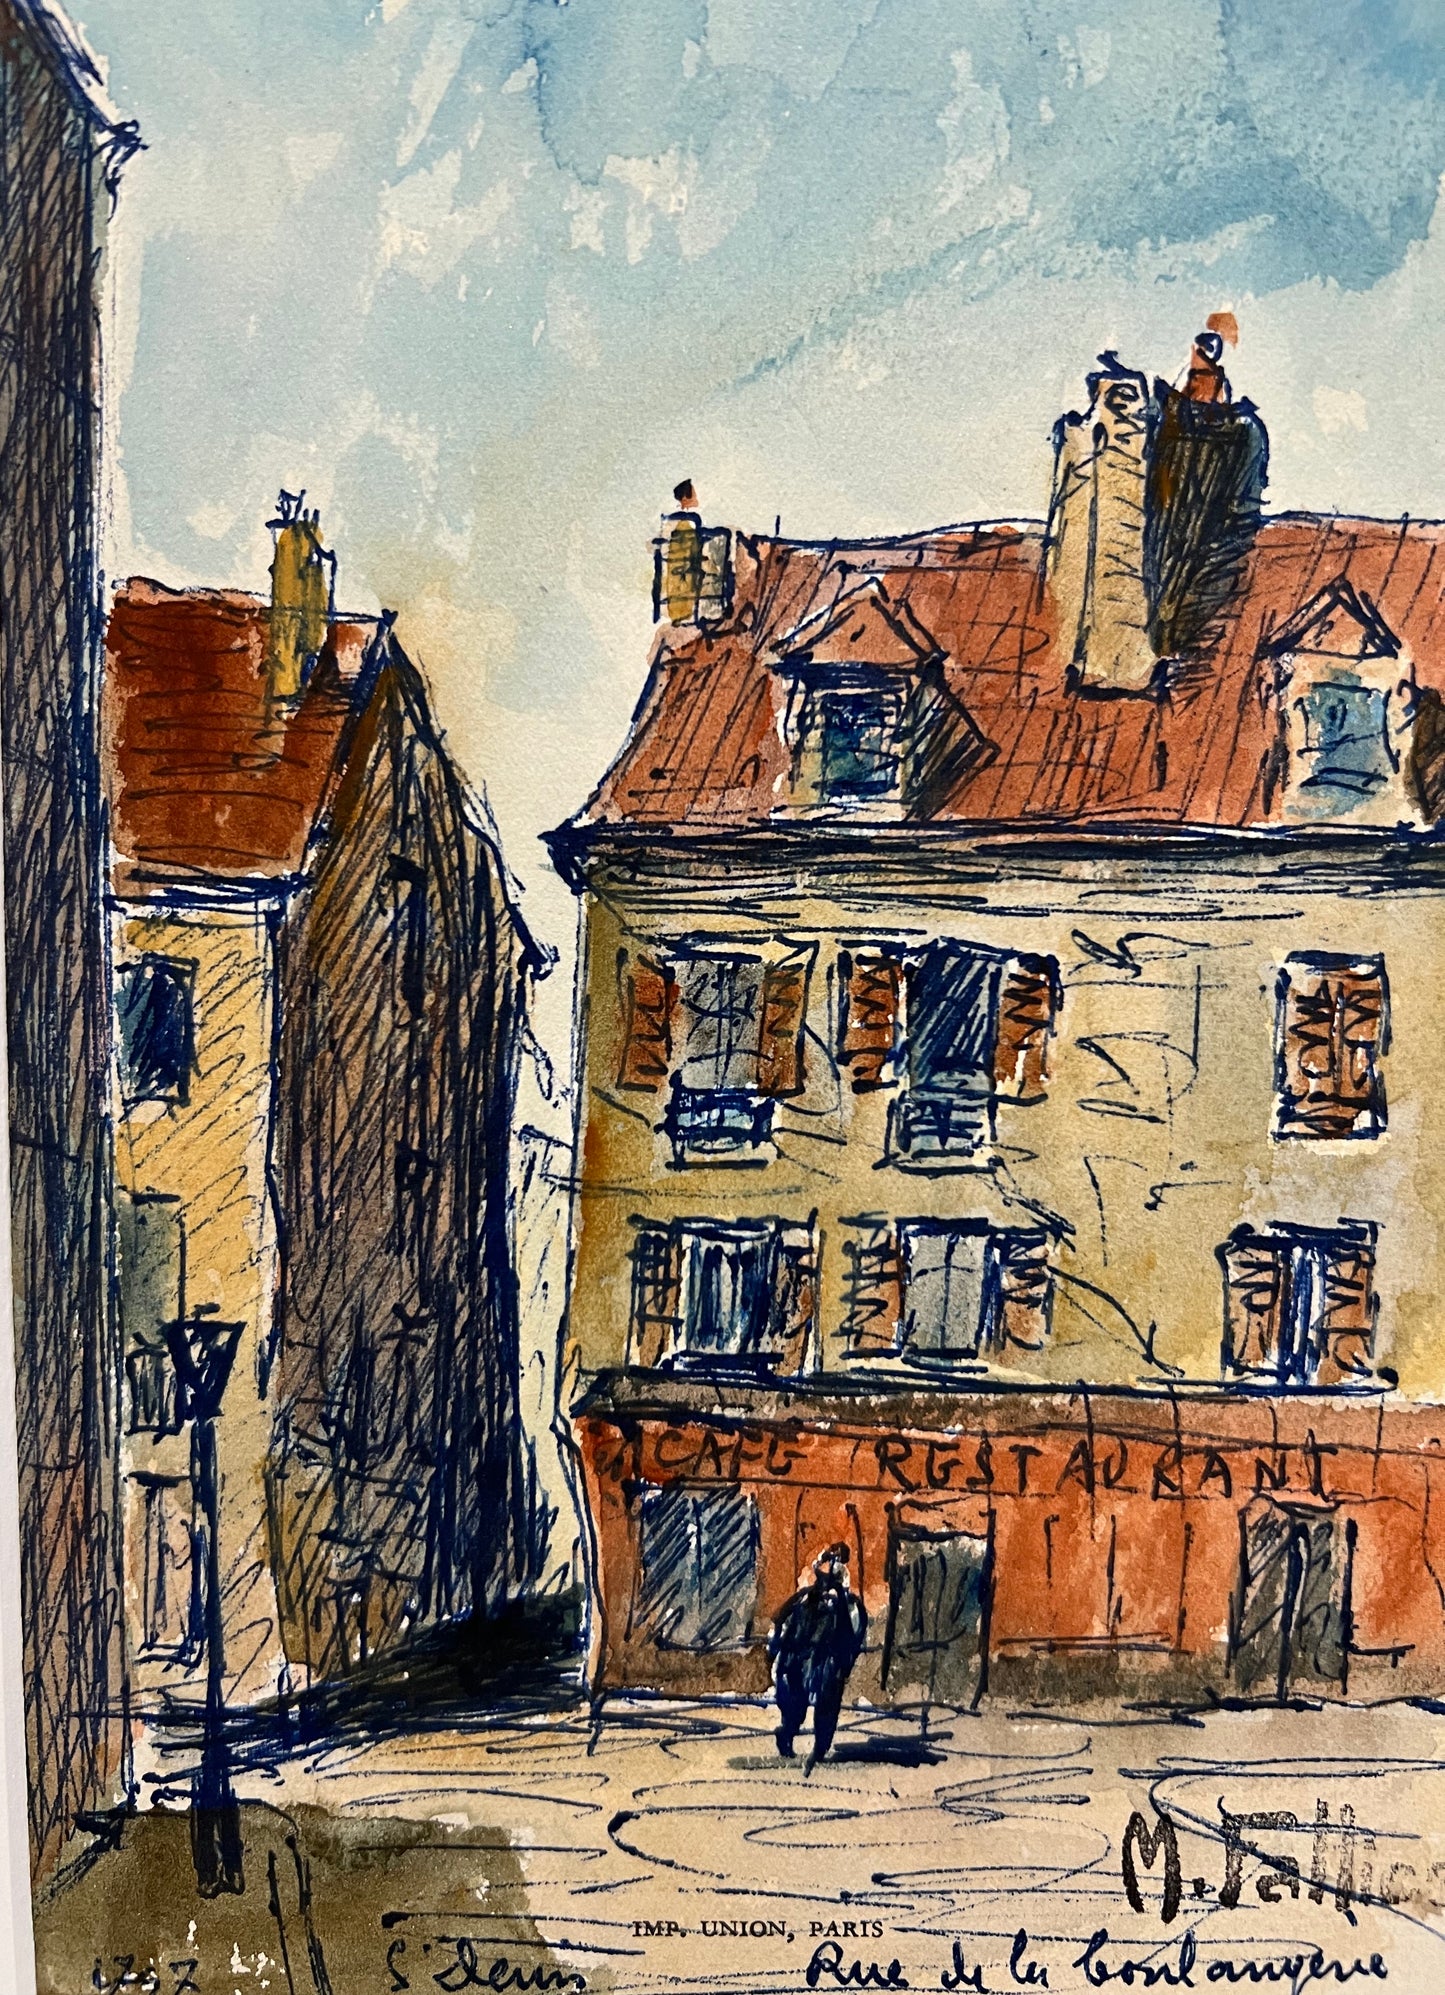 Rue de la Boulangerie (5" x 7.25")